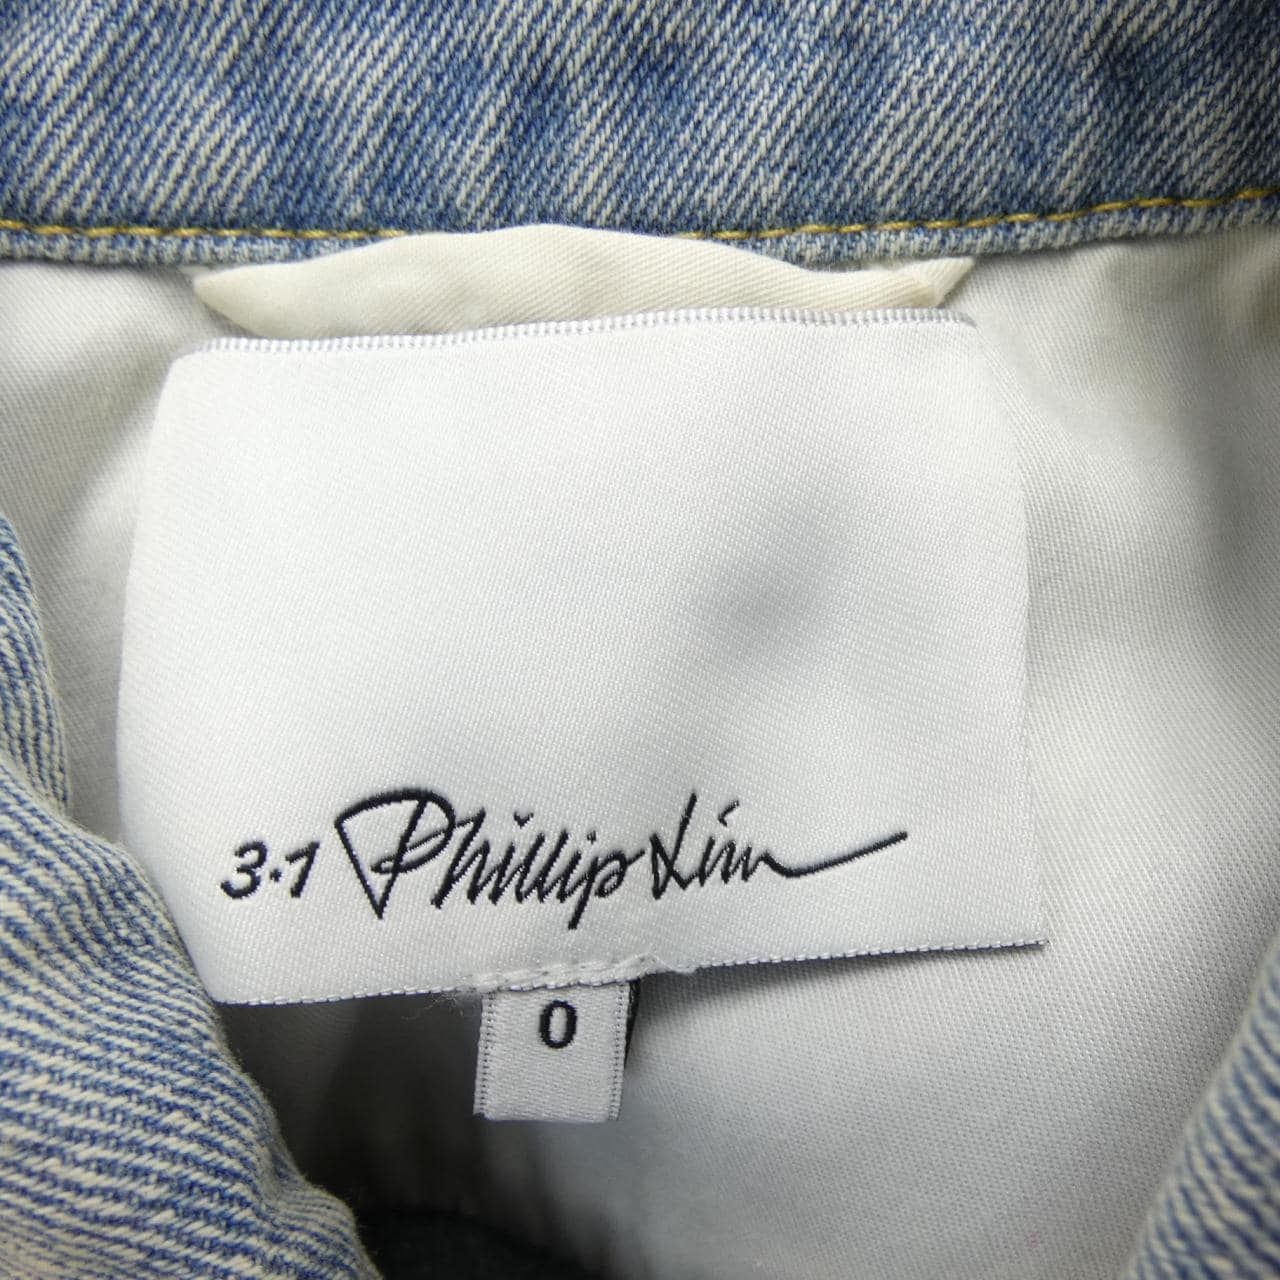 3.1 Phillip Lim 3.1 Phillip Lim Denim Jacket